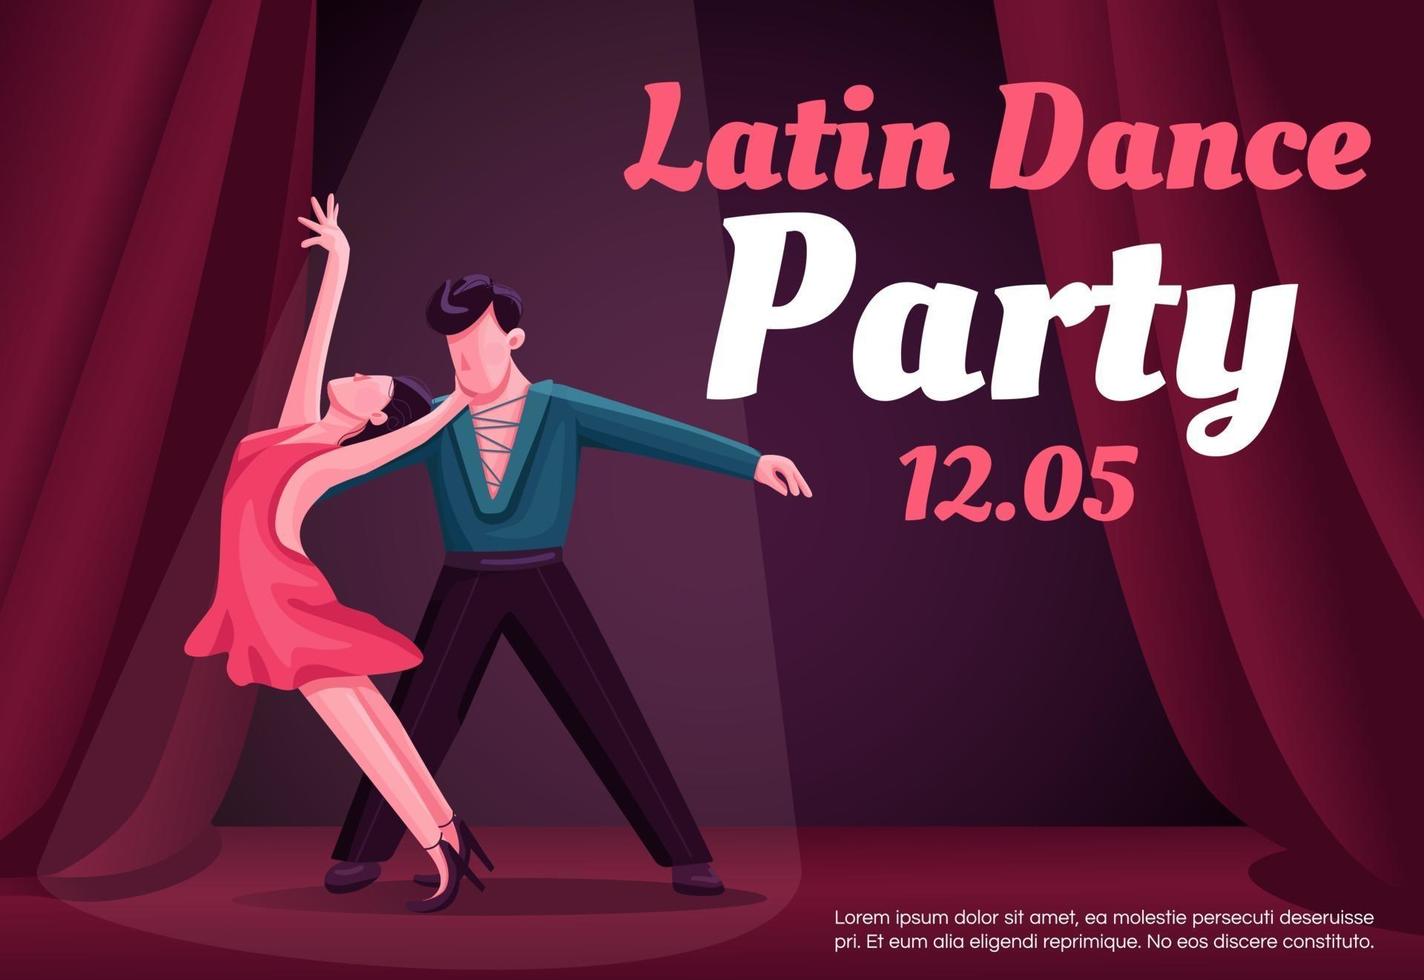 Plantilla de vector plano de banner de fiesta de baile latino